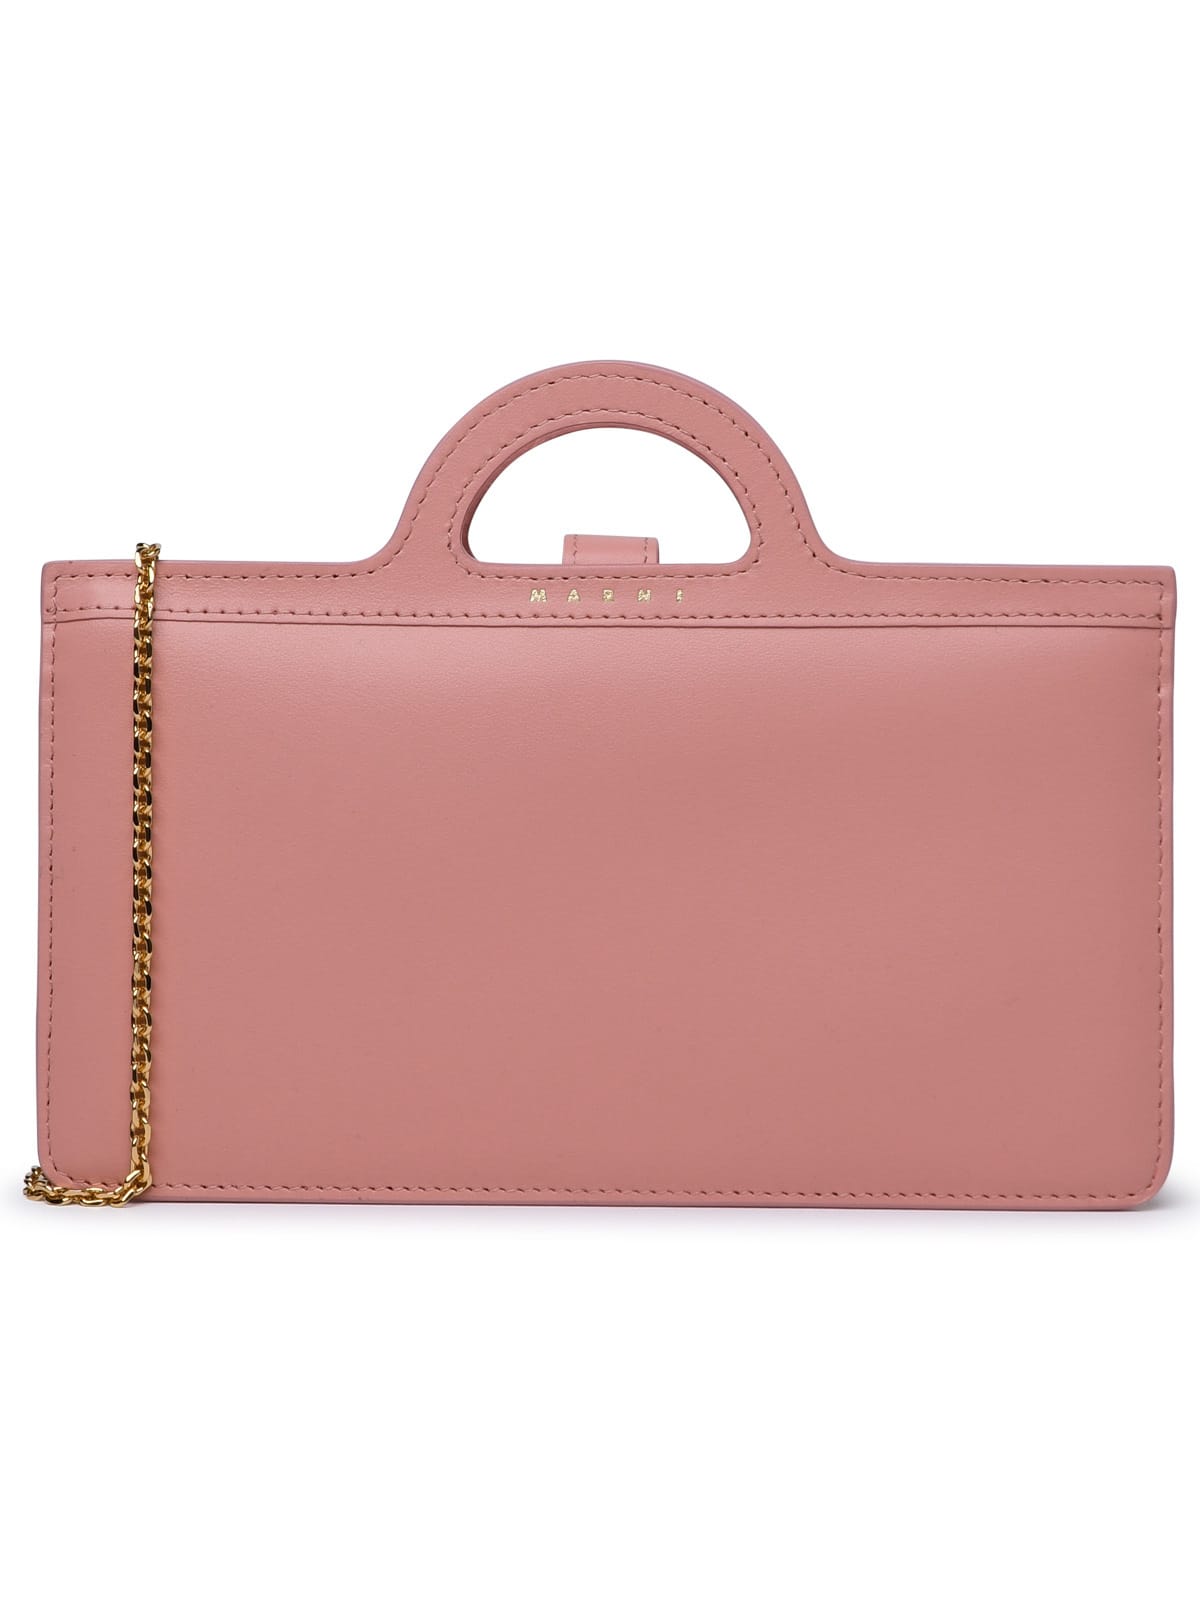 Marni Tropicalia Pink Calf Leather Bag